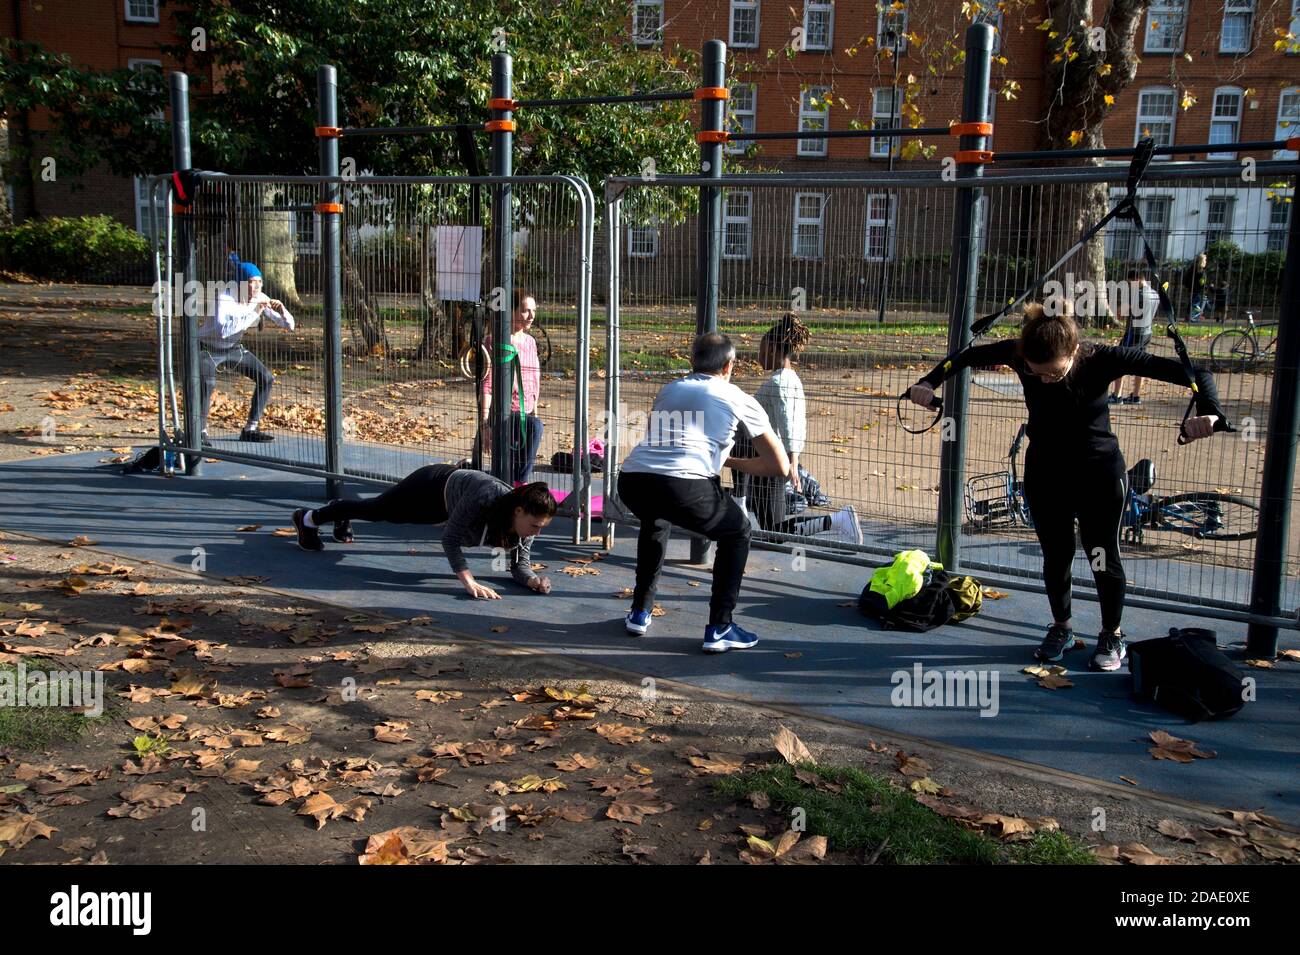 Londres, Hackney. Campos de Londres. La gente hace ejercicio junto al equipo de gimnasio cerrado Foto de stock